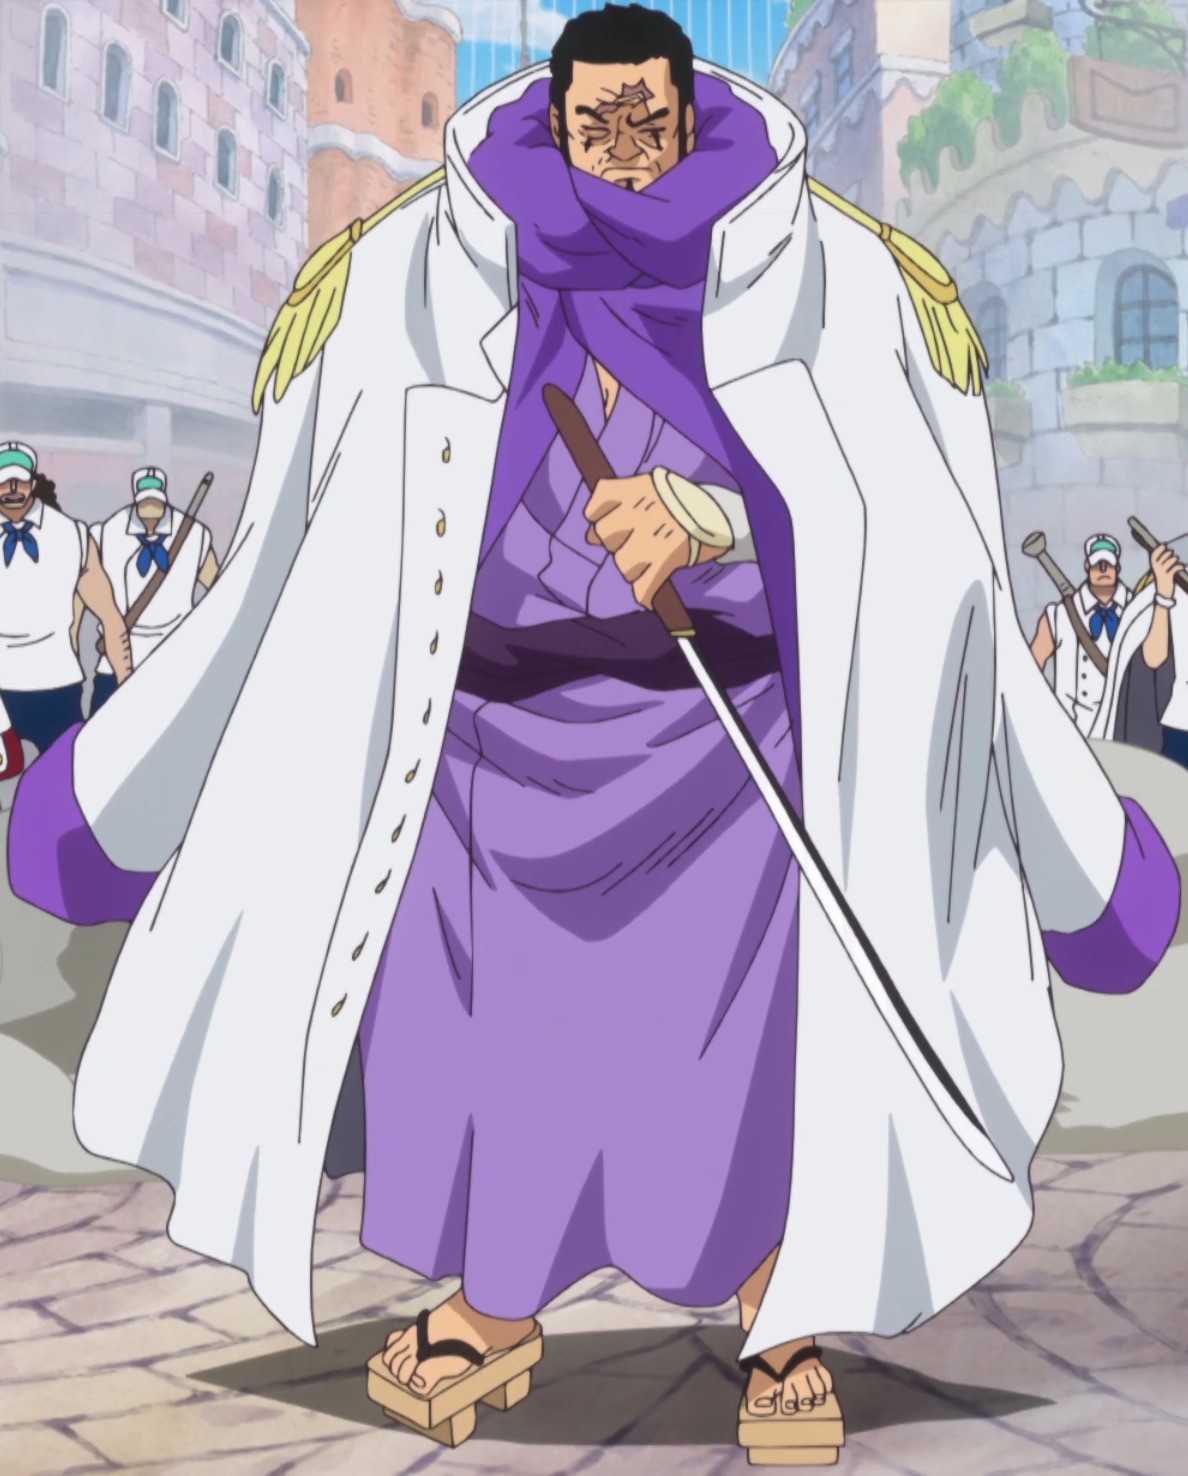 Issho, nhân vật quan trọng trong One Piece, sẽ mang đến cho bạn cảm giác hứng thú và tò mò. Nếu bạn muốn tìm hiểu về Issho, hãy xem hình ảnh liên quan để chiêm ngưỡng vẻ đẹp của hắn. Issho là một vị tướng thông minh và tài năng, và bạn sẽ không muốn bỏ lỡ cơ hội được biết về anh ta.